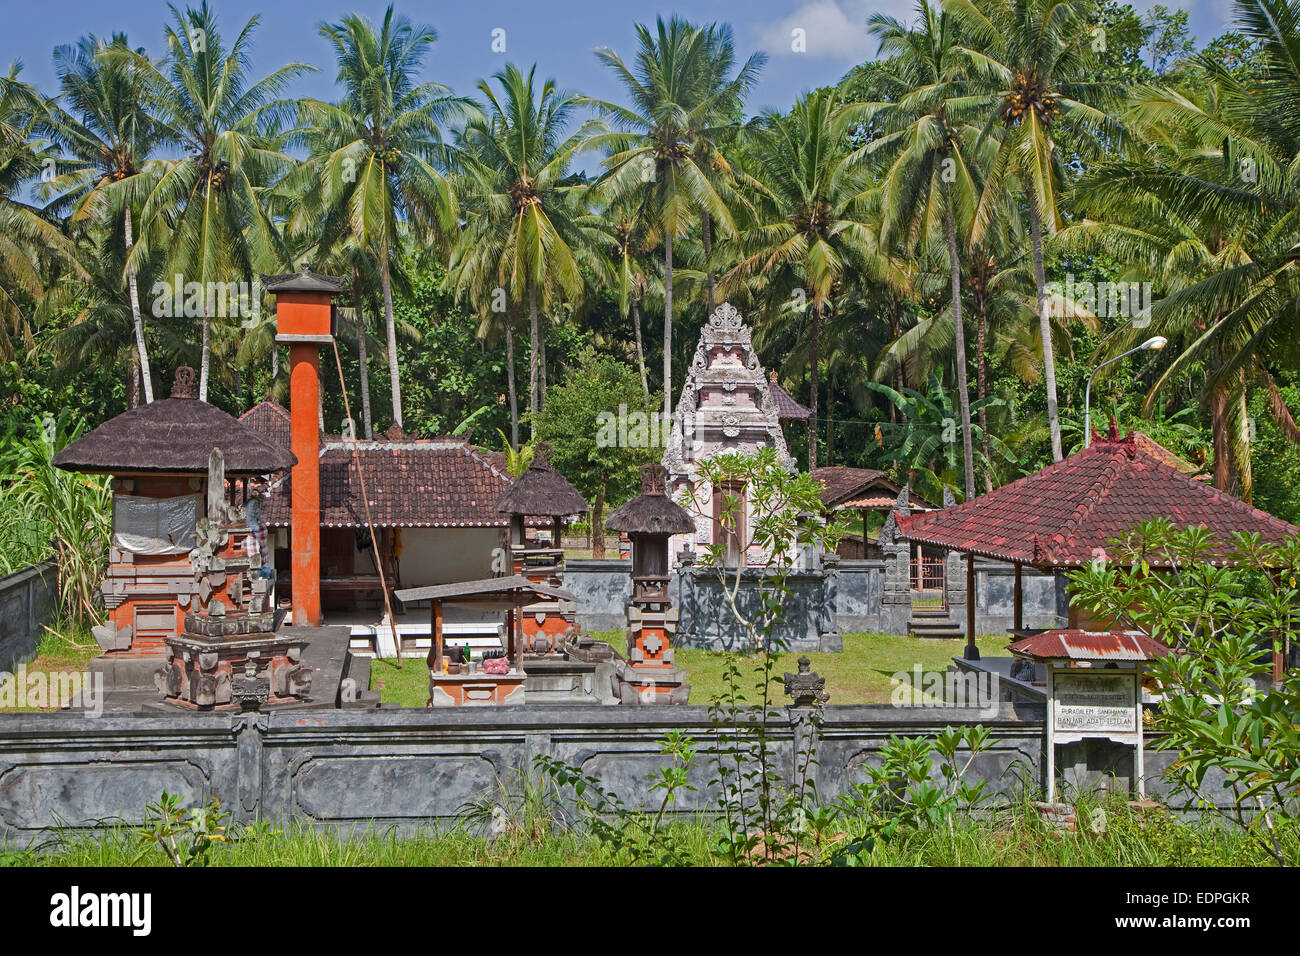 Pequeño templo budista Balinés en la isla de Bali, Indonesia Foto de stock